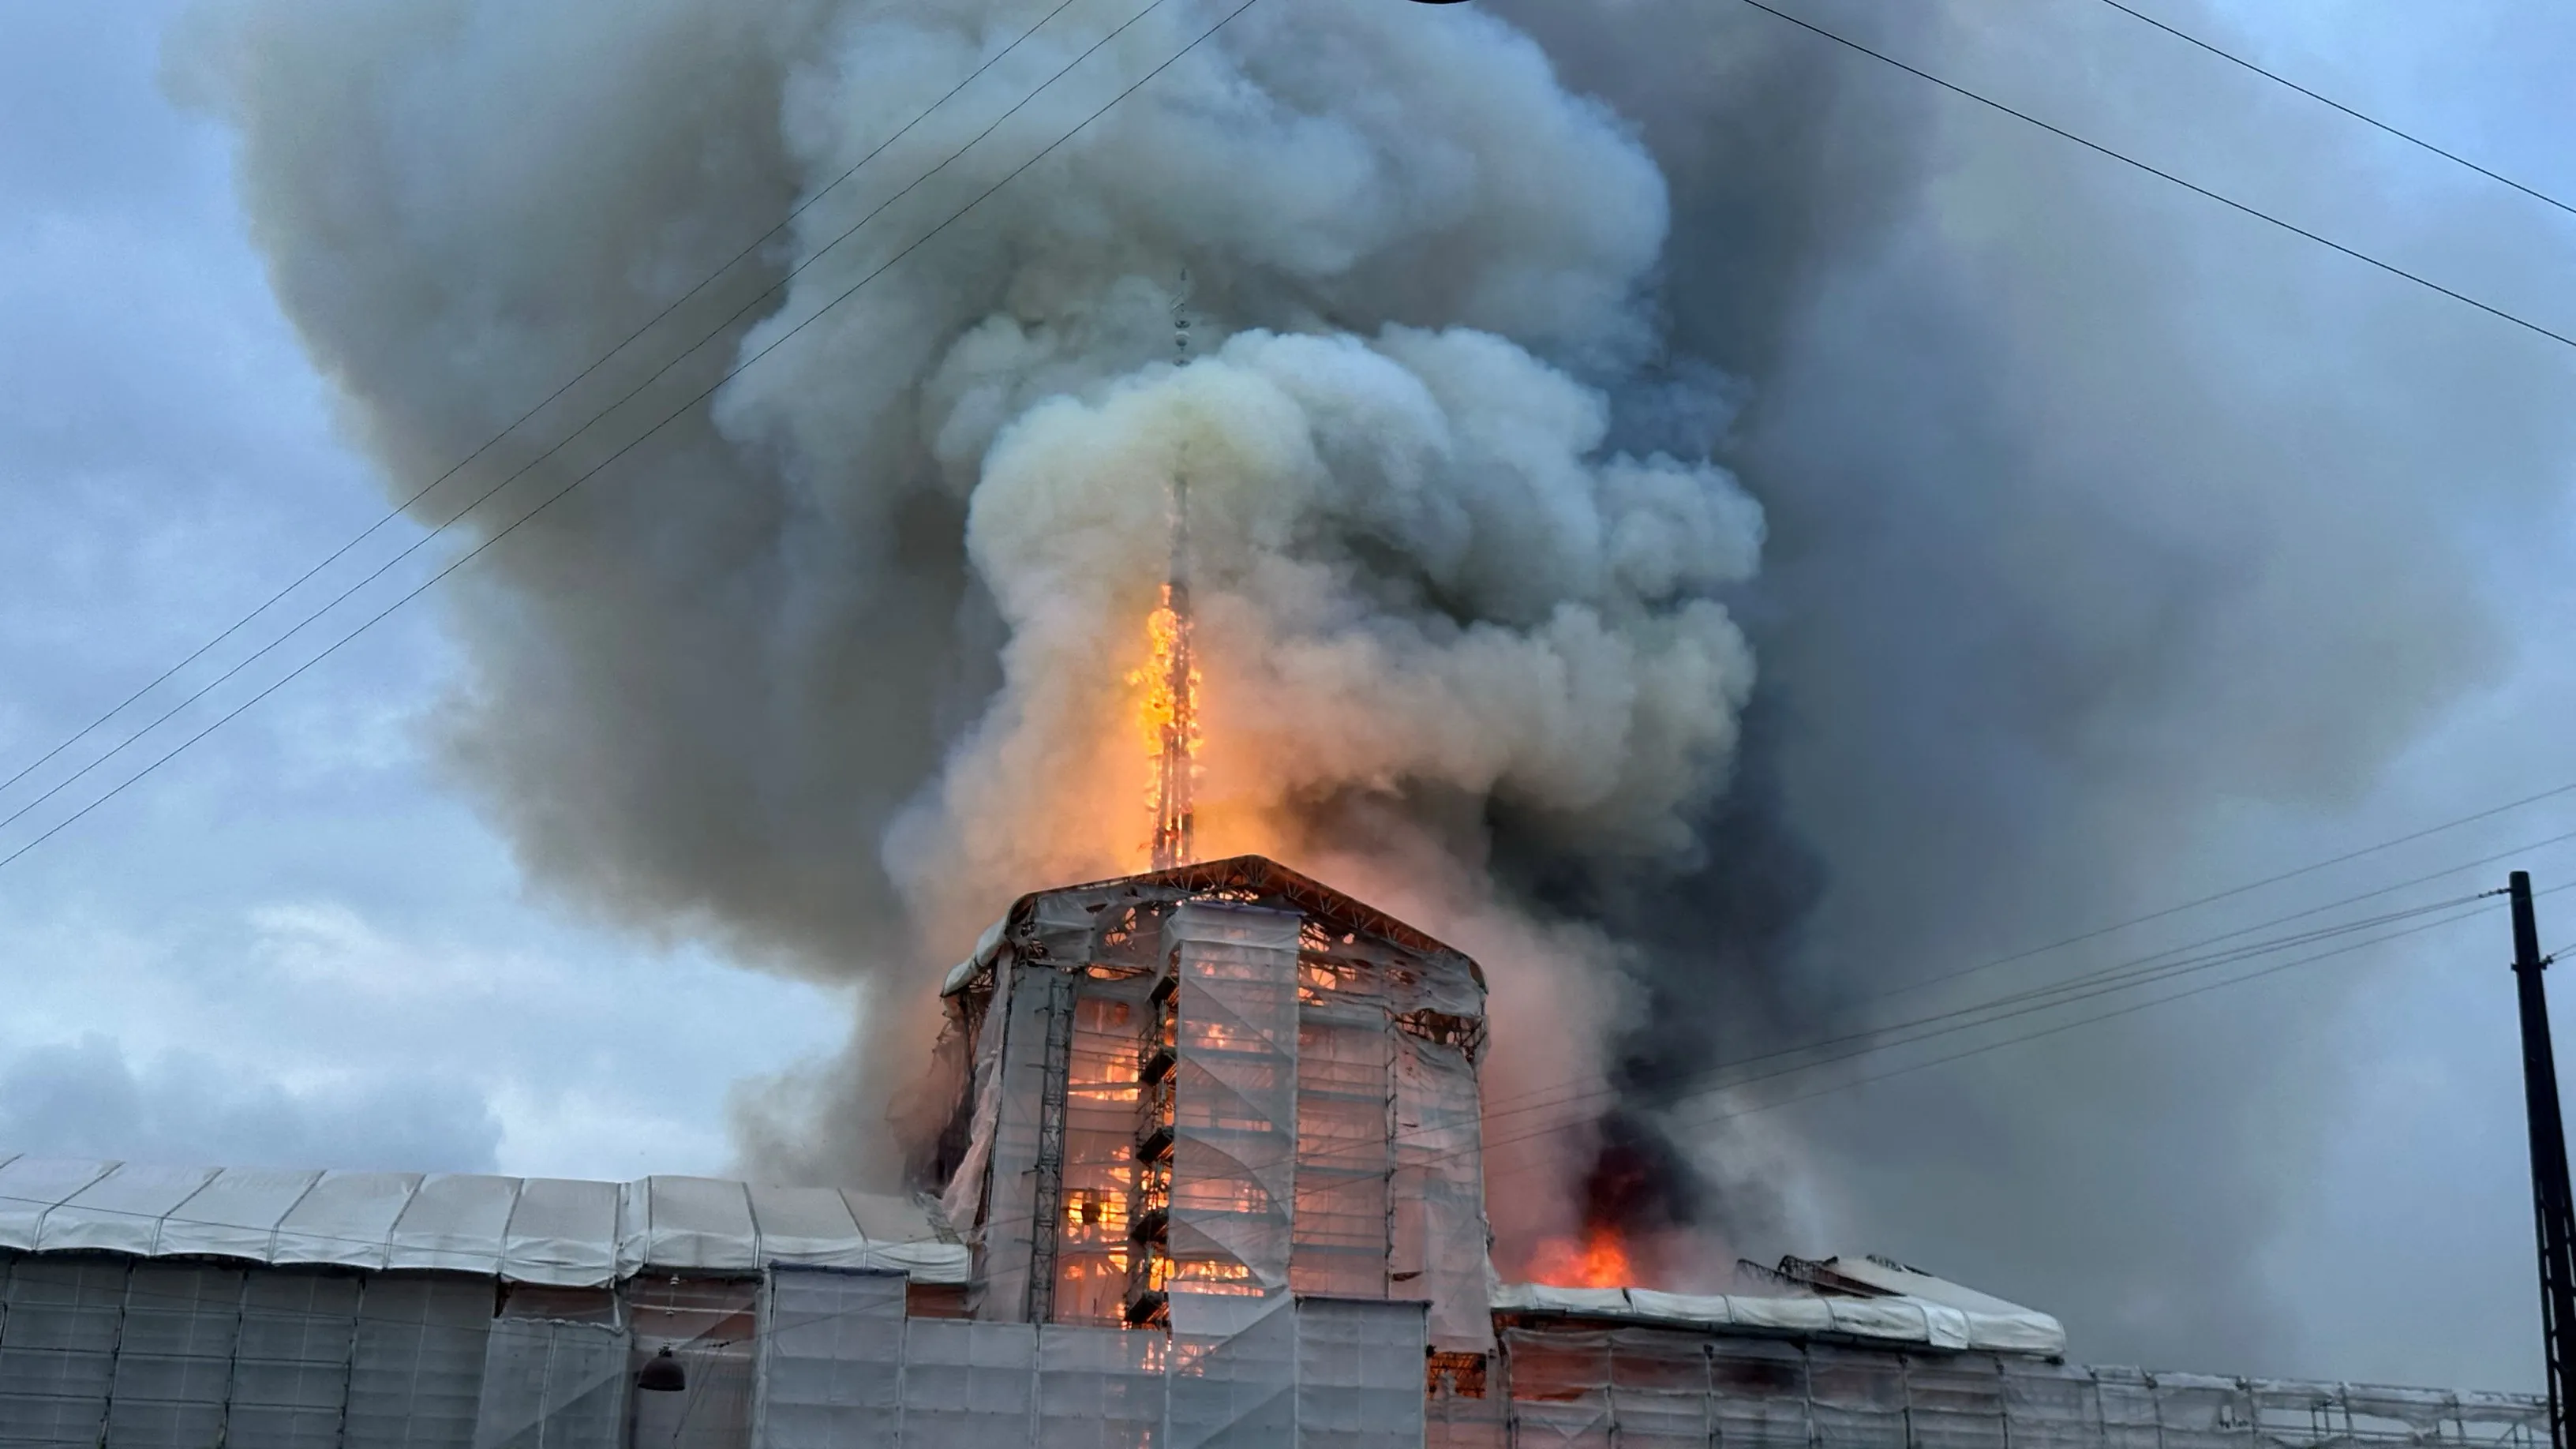 V Kodani hoří historická budova burzy, její ikonická věž se zřítila